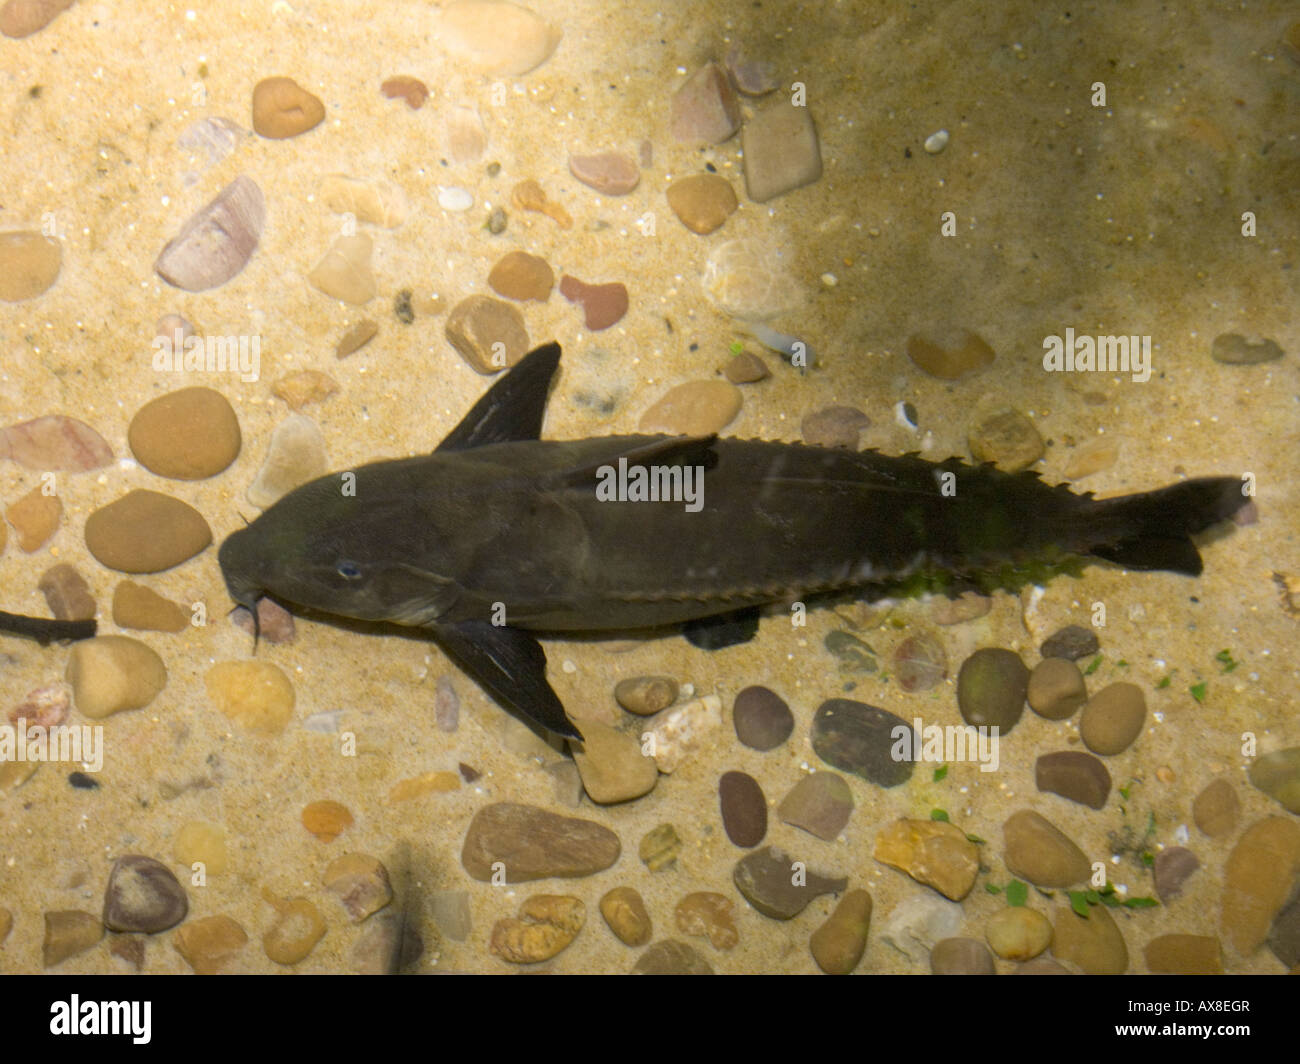 Ripsaw catfish, Oxydoras niger, AKA Black Talking Catfish, Mother